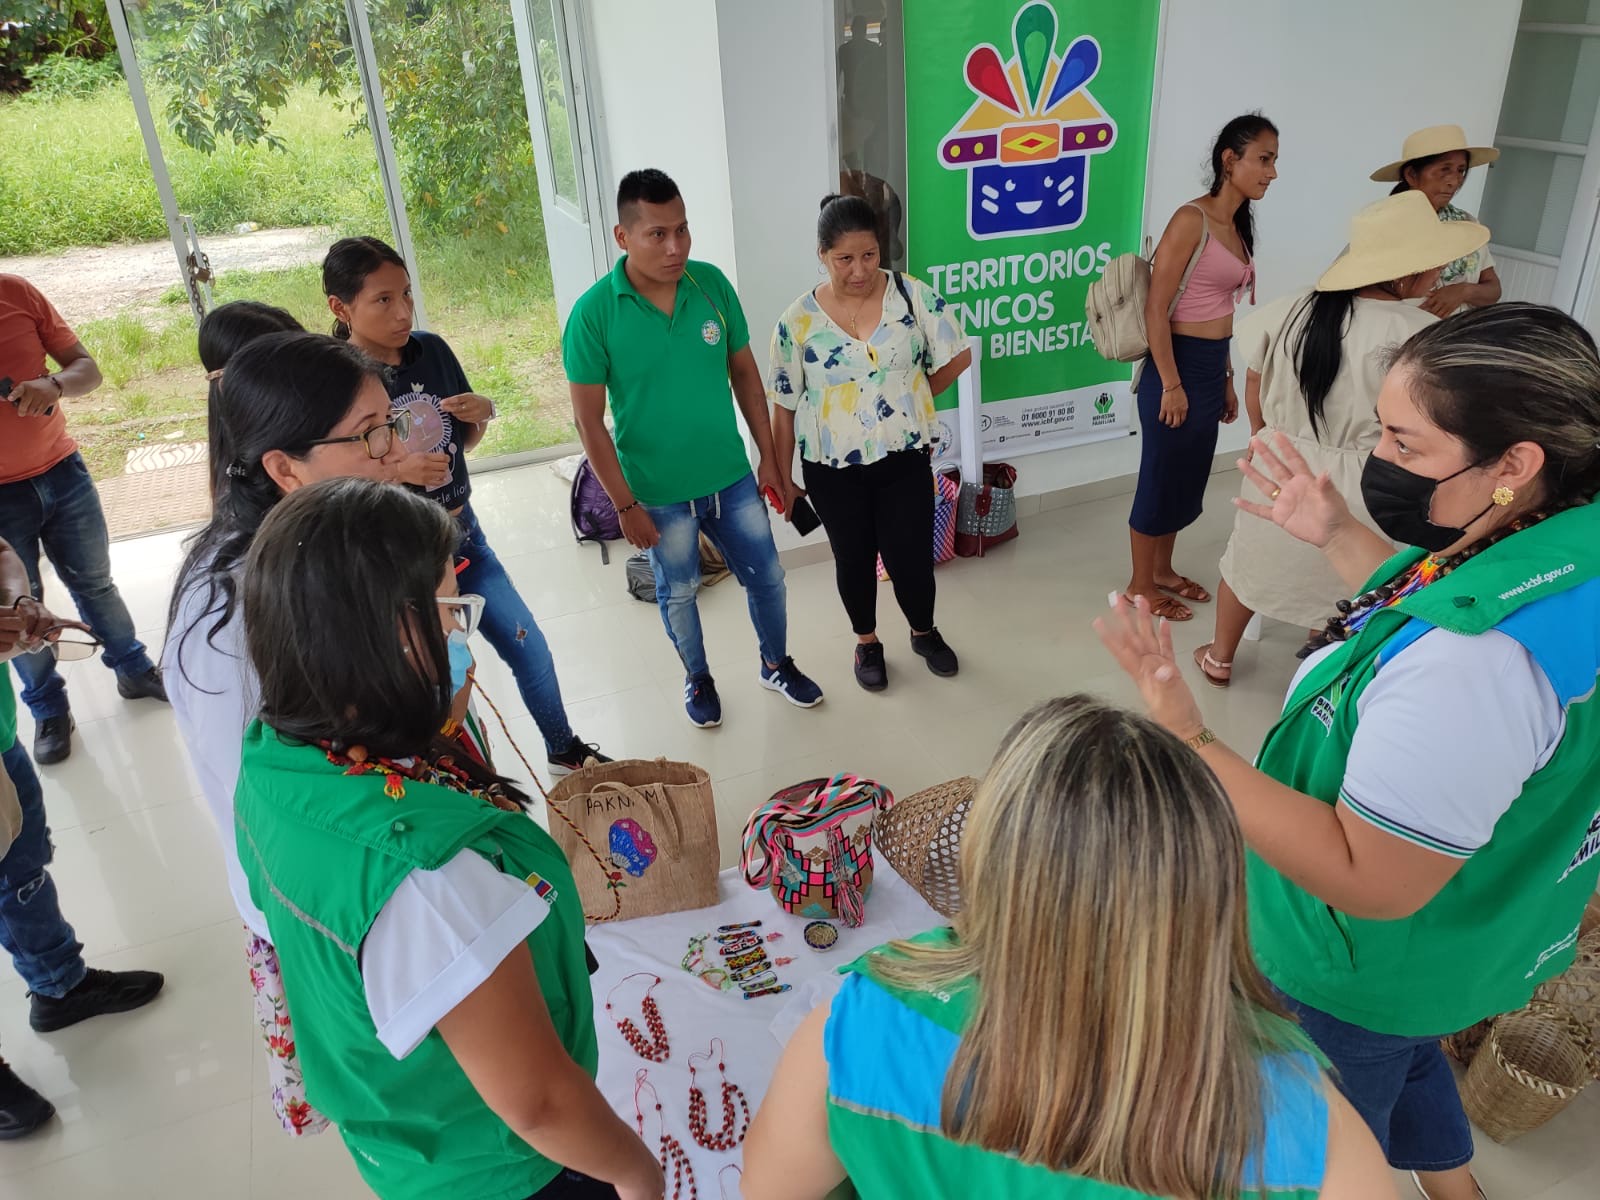 ICBF beneficia a 301 familias a través de Territorios Étnicos con Bienestar en Putumayo